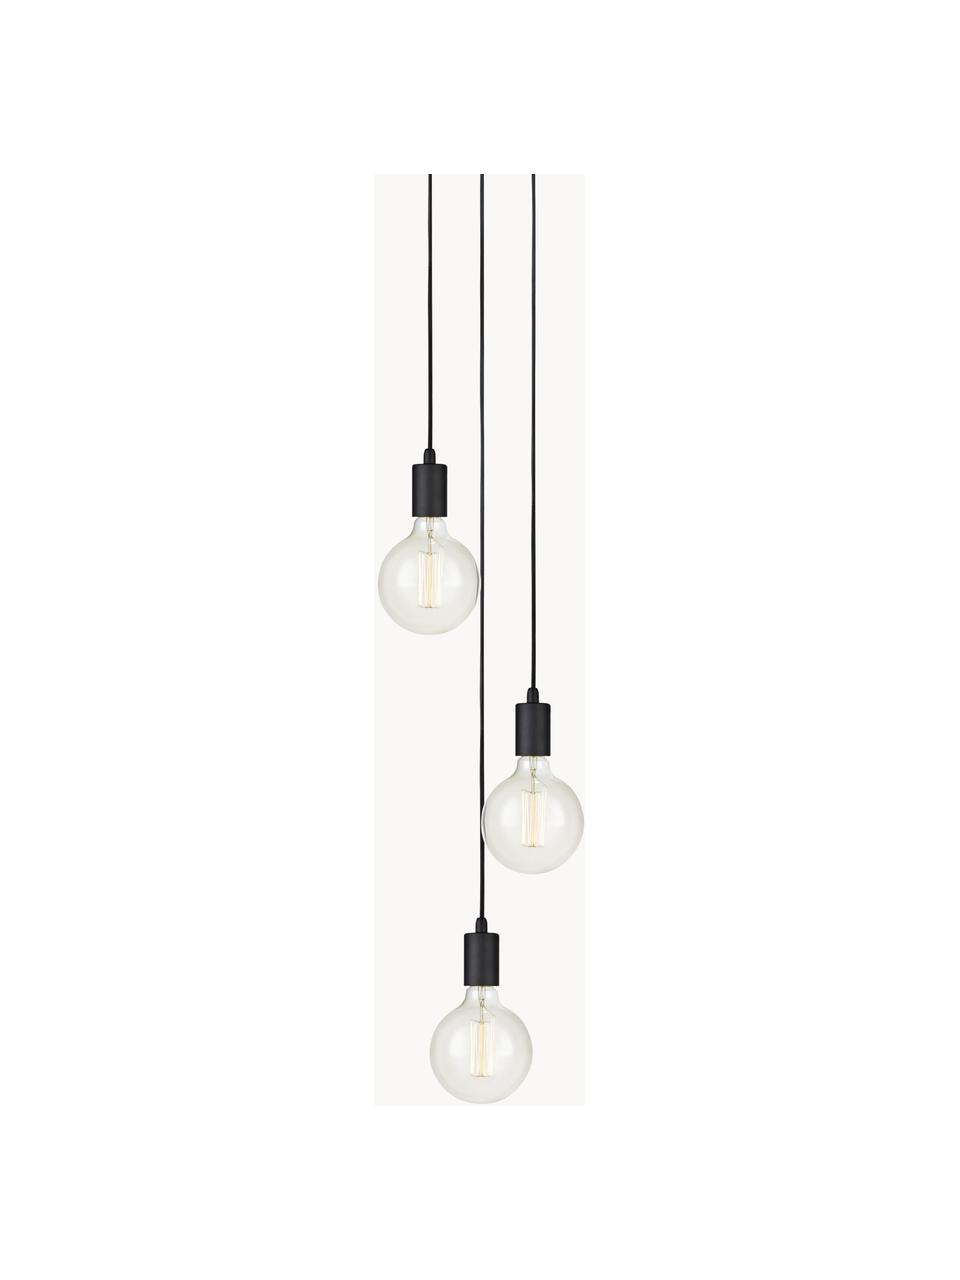 Petite suspension 3 lampes ampoule nue Sky, Noir, Ø 25 cm